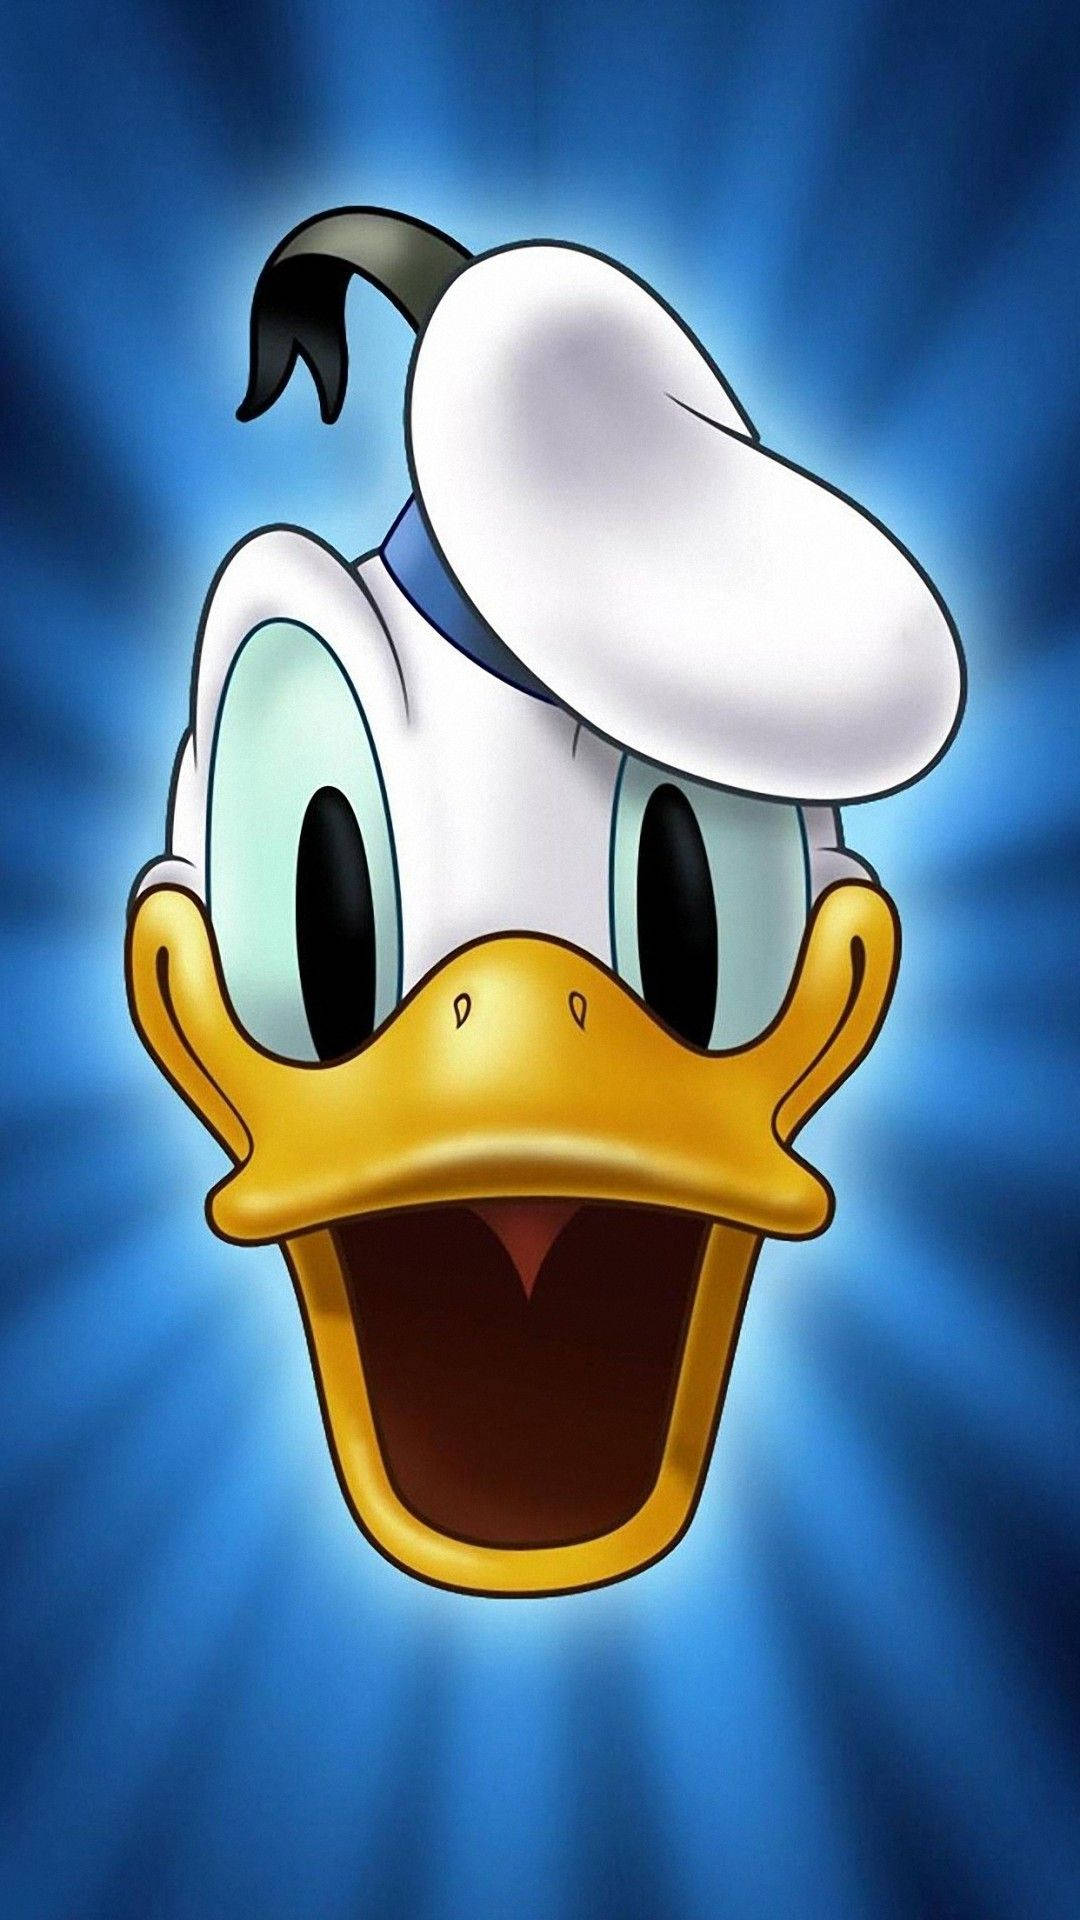 Donald Duck Portrait Background